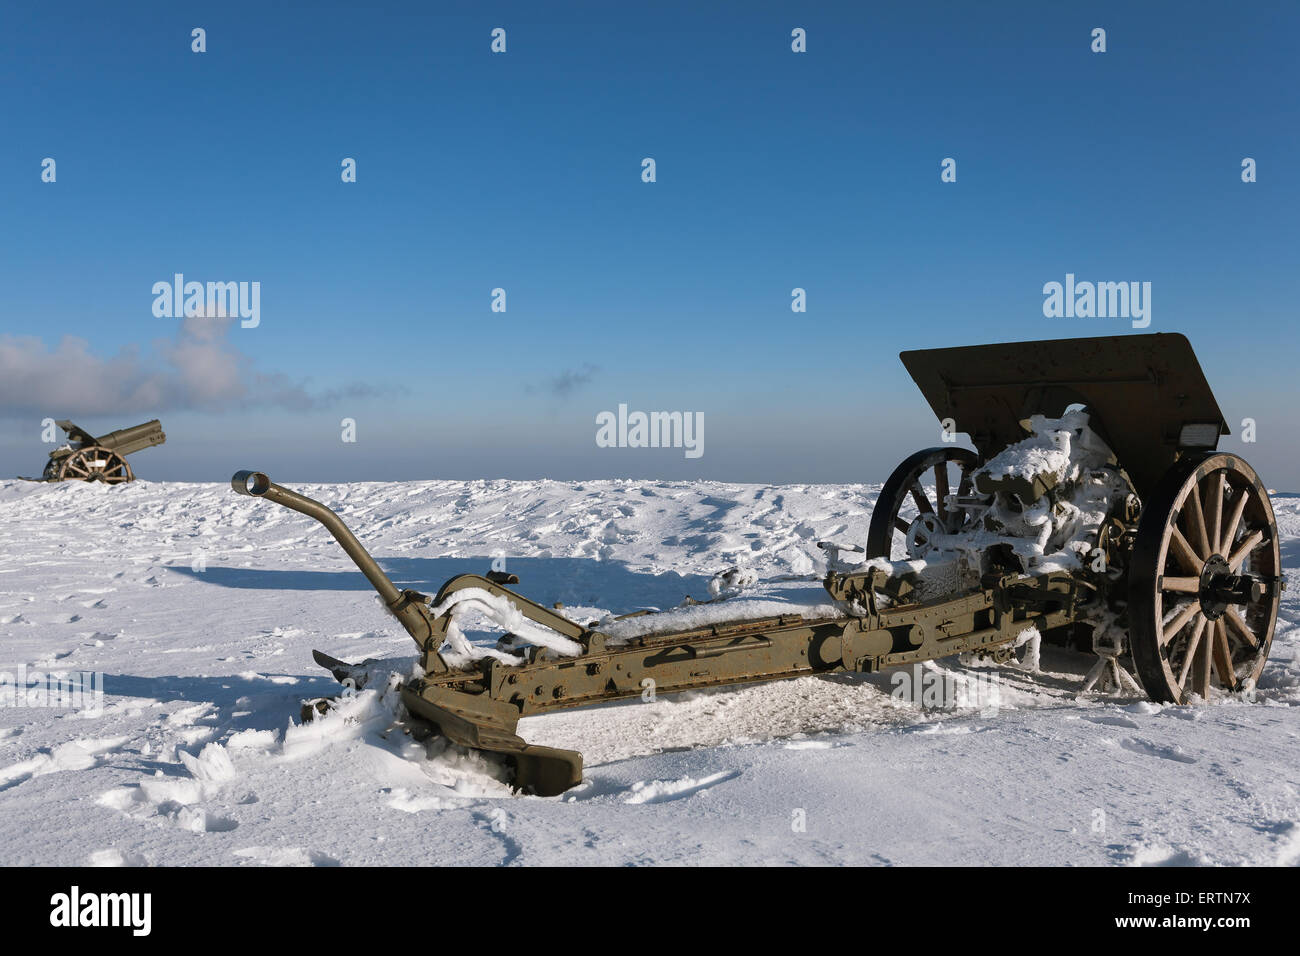 Guerre d'hiver Banque de photographies et d'images à haute résolution -  Page 6 - Alamy